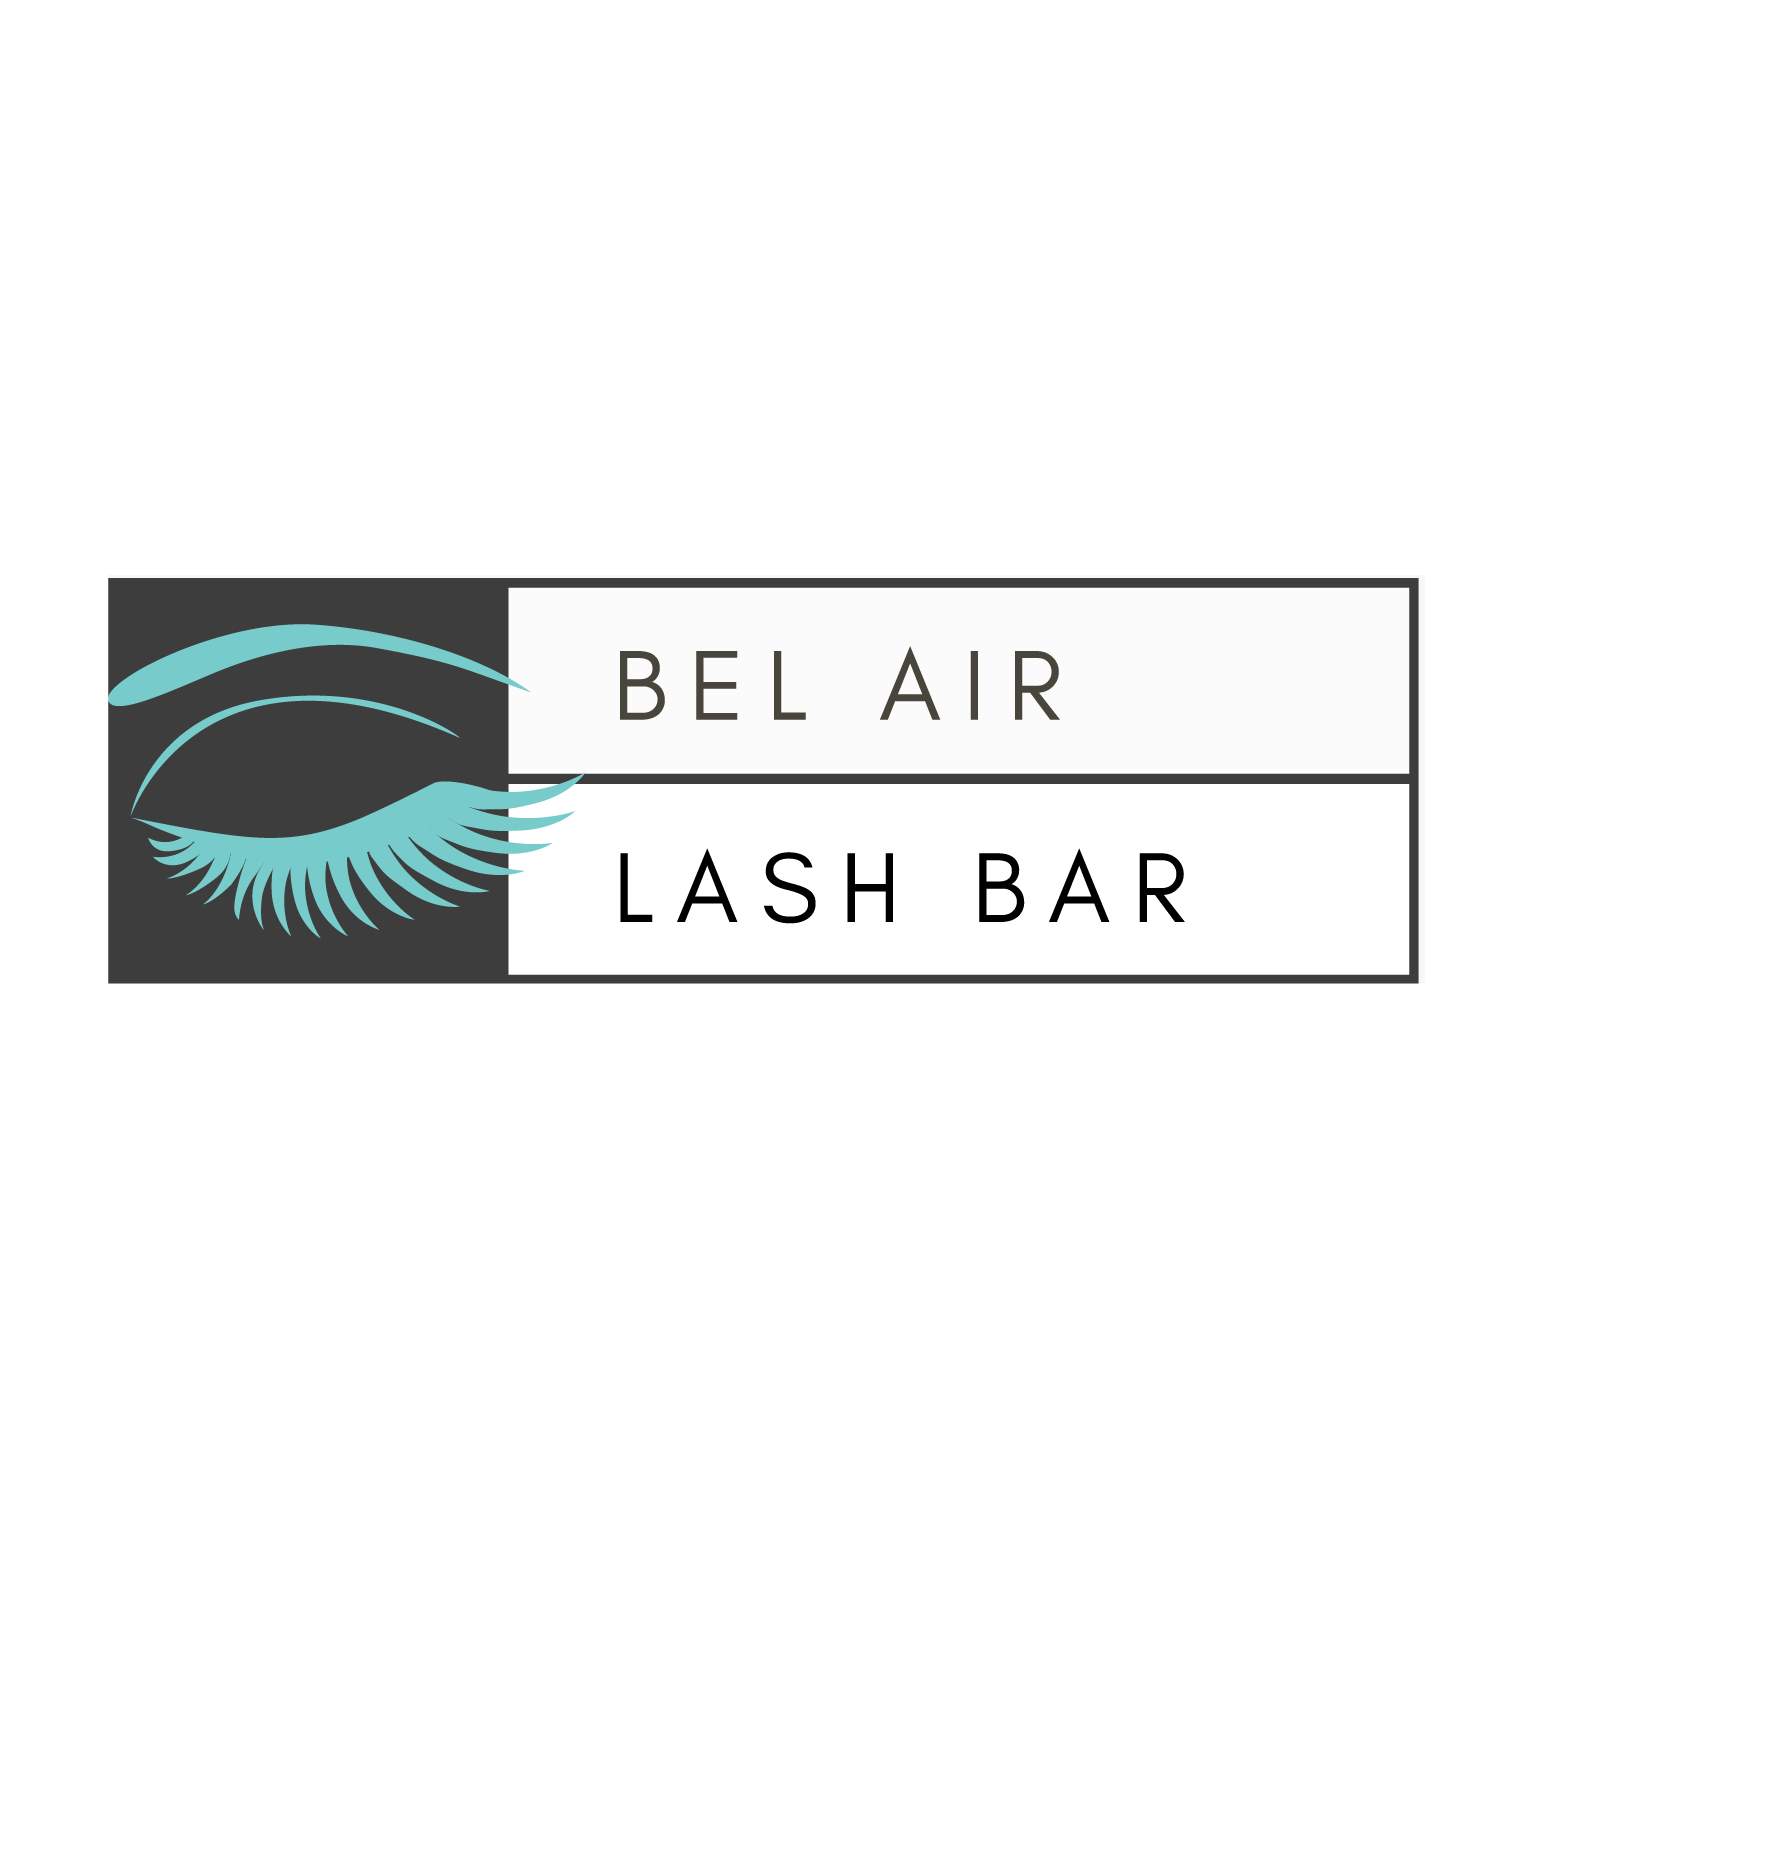 Bel Air Lash Bar